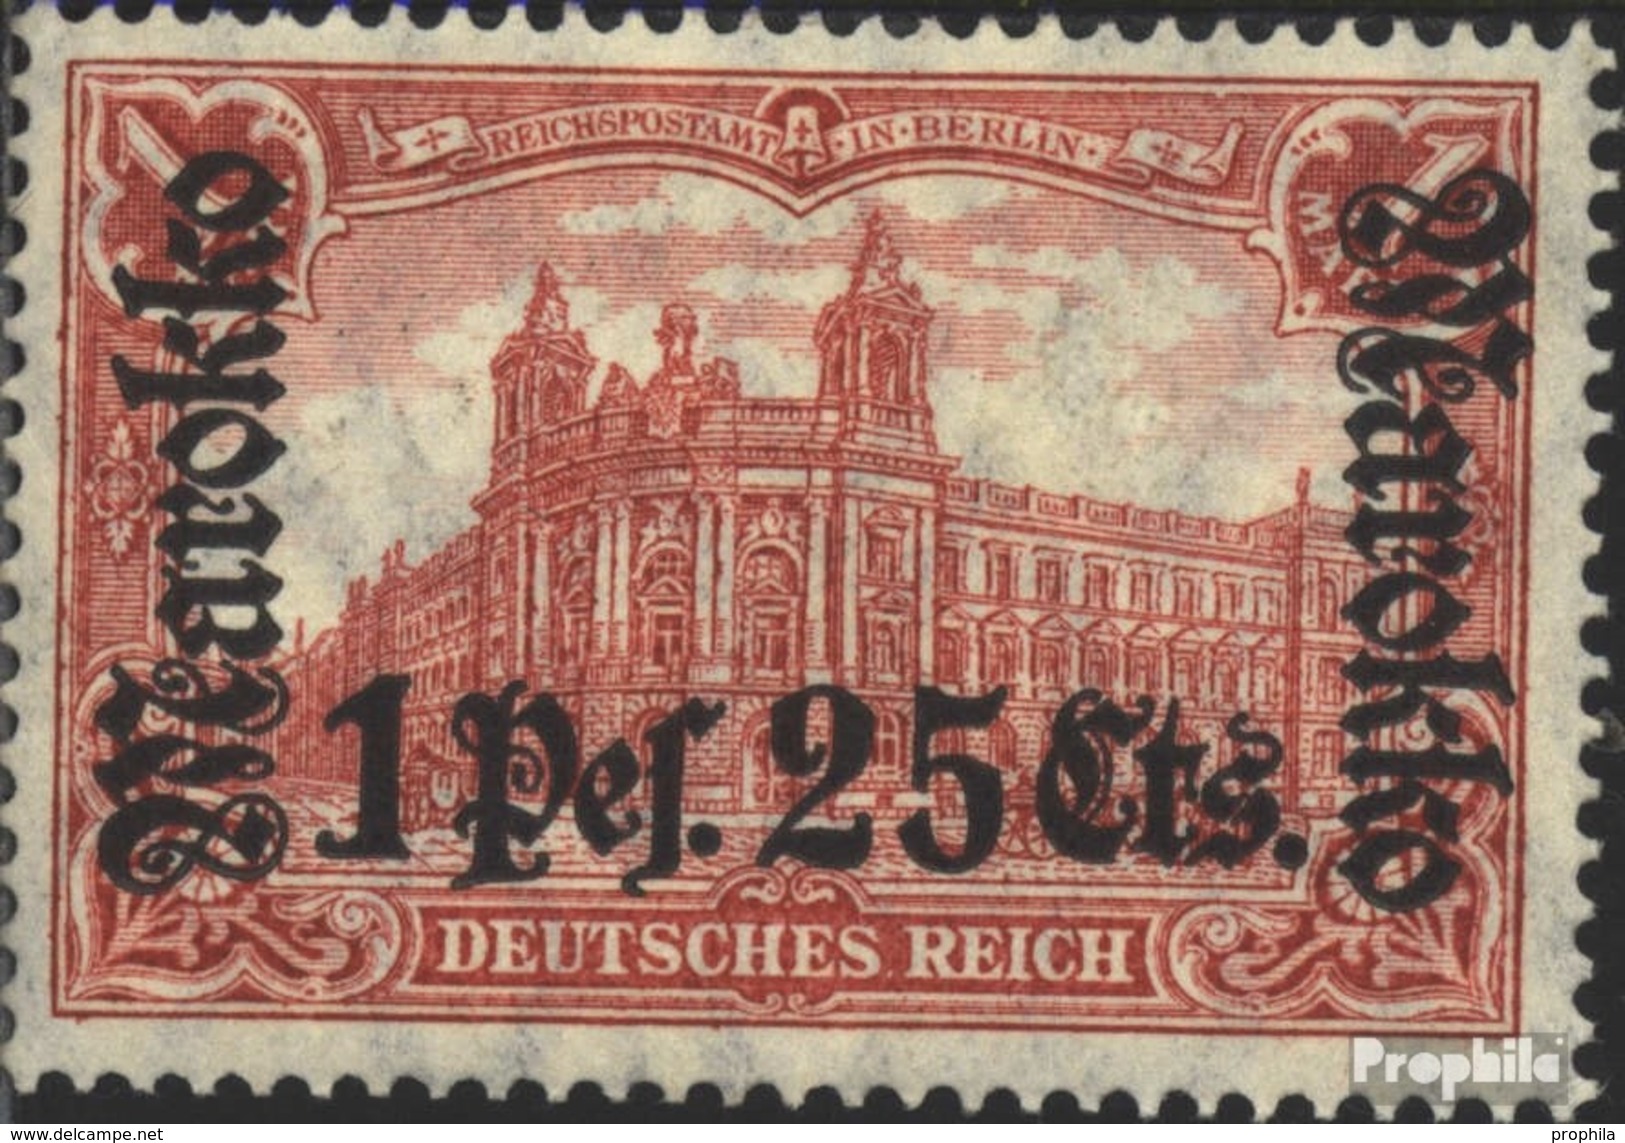 Dt. Post Marokko 55I A Postfrisch 1911 Aufdruckausgabe - Deutsche Post In Marokko